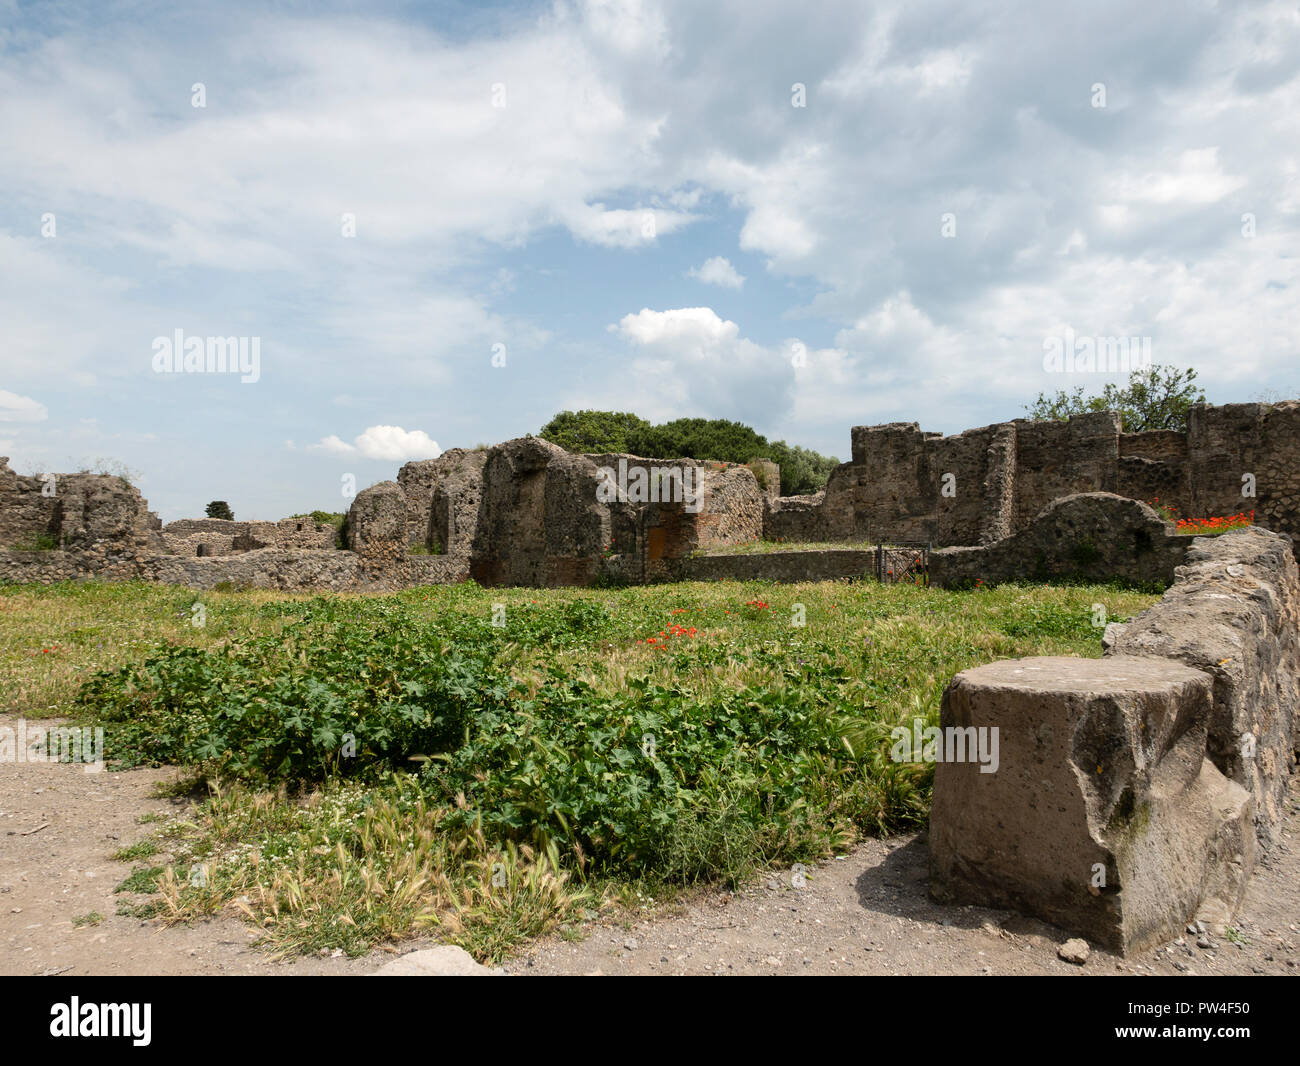 Le rovine di Pompei, distrutto dal vulcanico erruption del Vesuvio nel 79AD. Pompei, Campania, Italia. Foto Stock